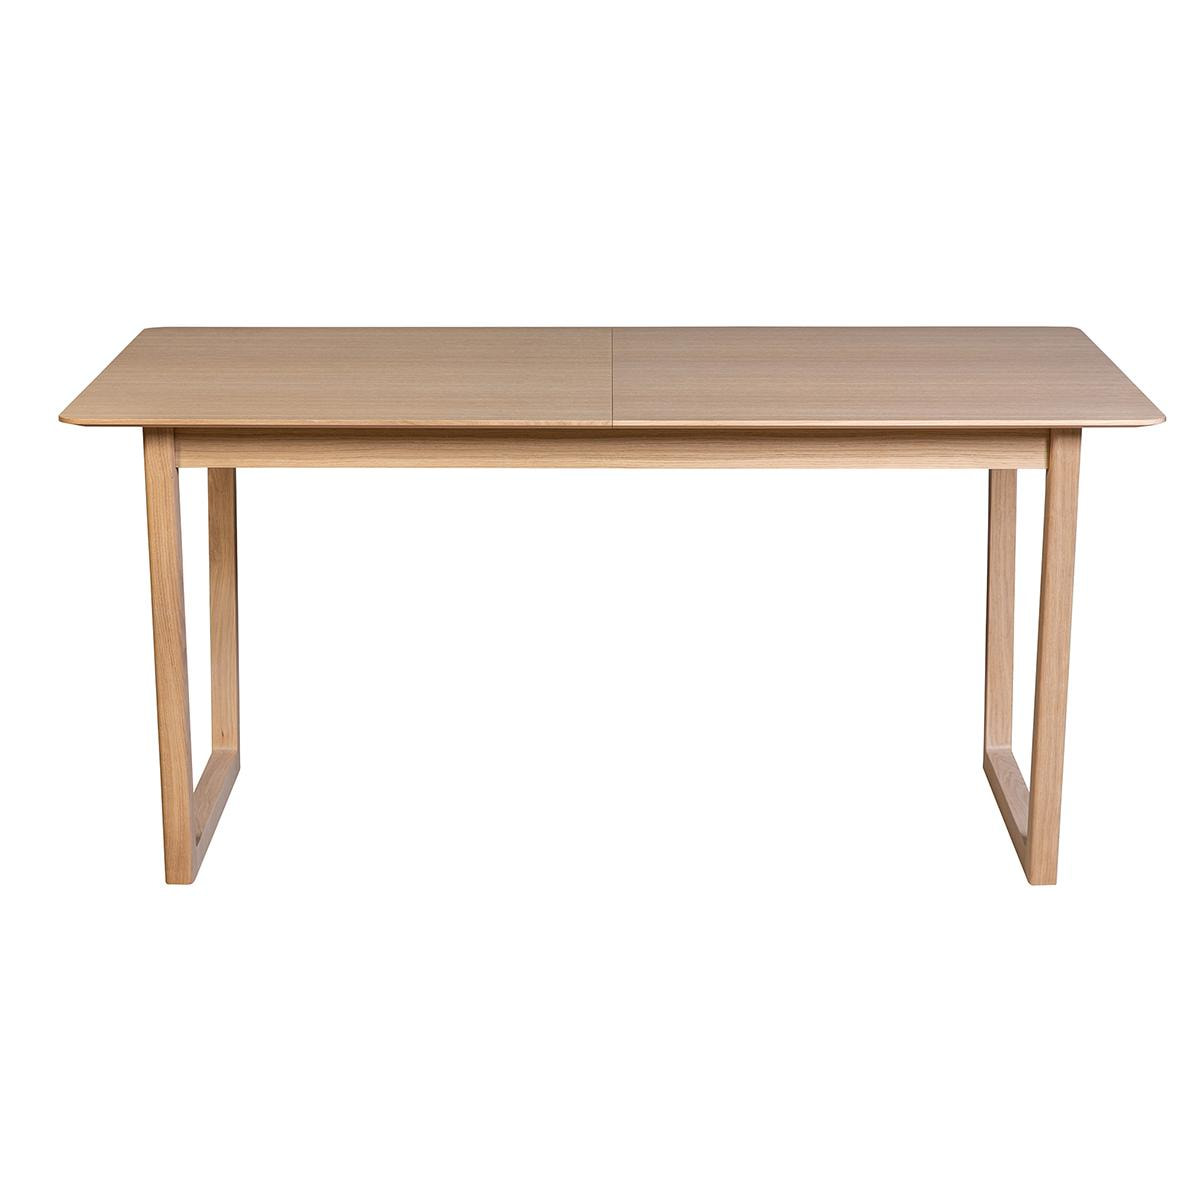 Table extensible rallonges intégrées rectangulaire bois clair chêne L160-240 cm LAHO